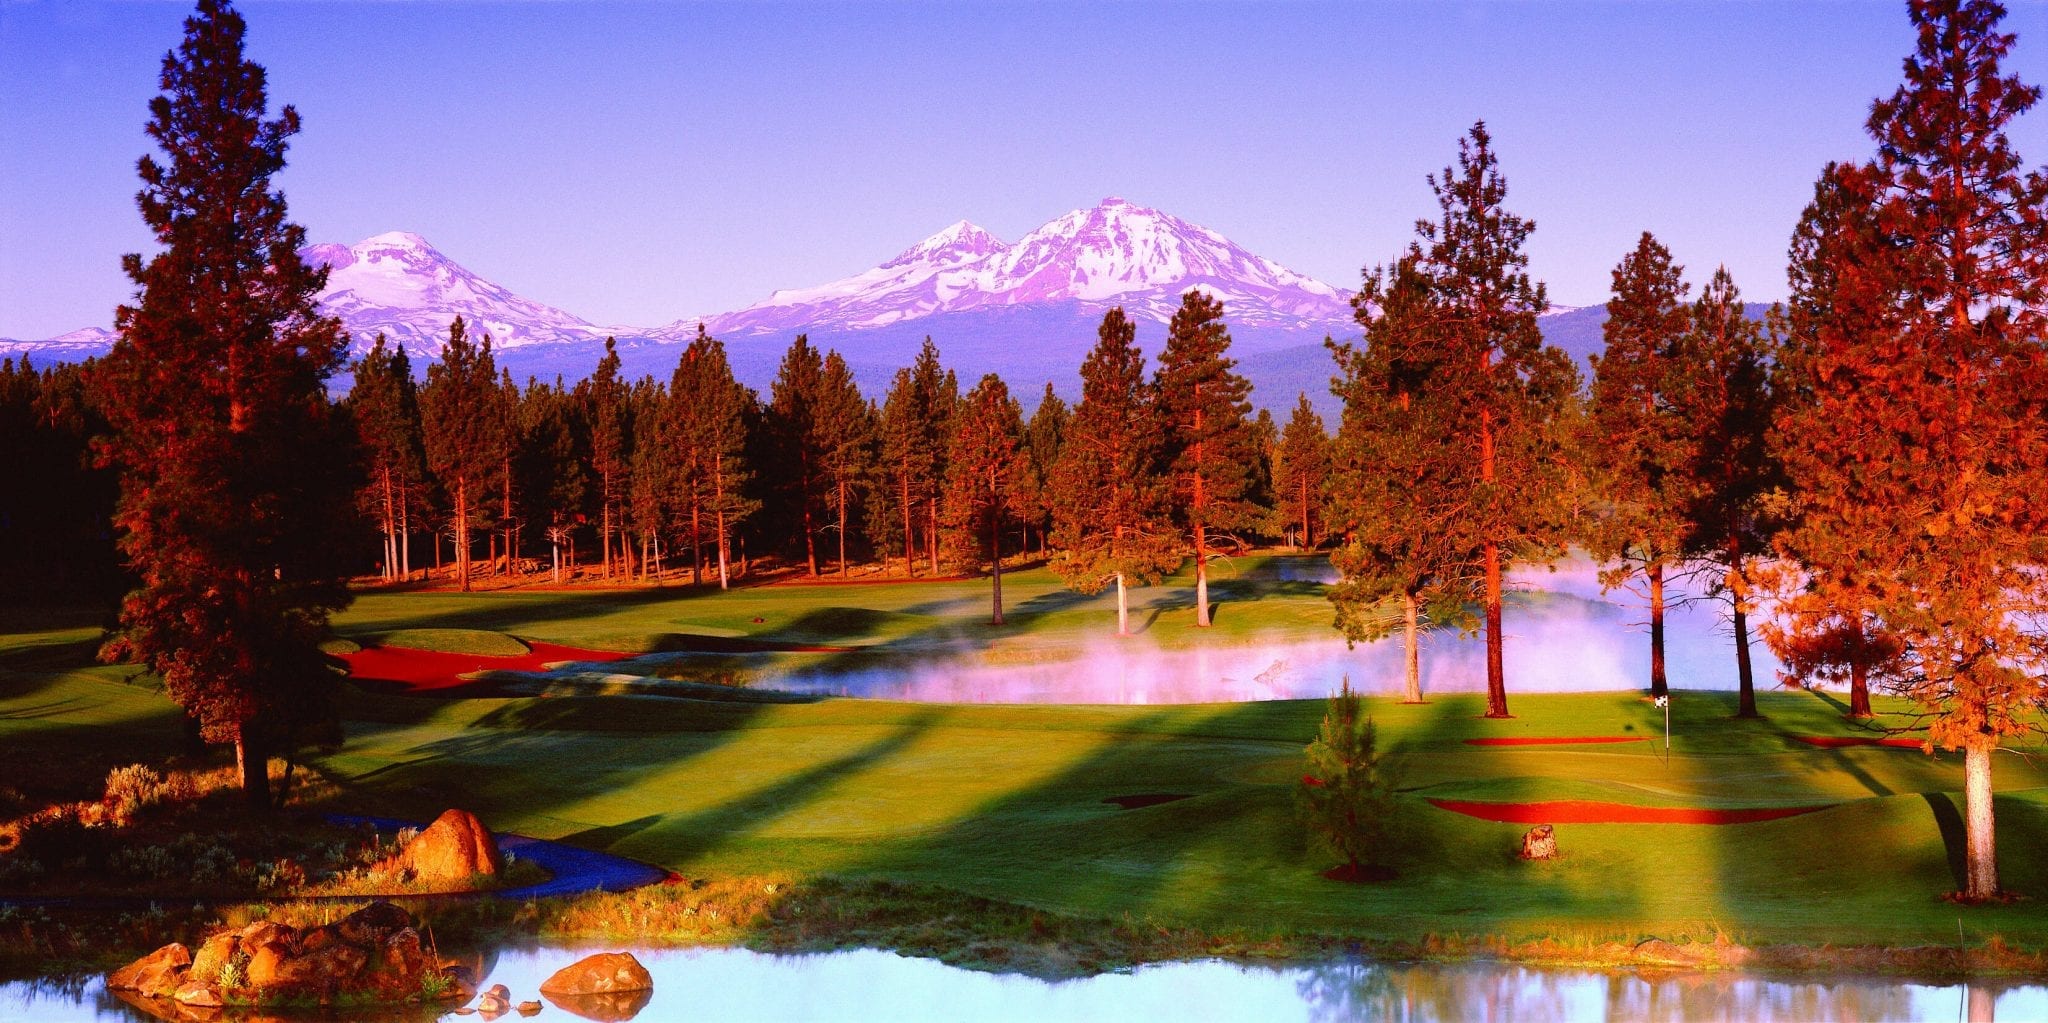 Aspen Lake Golf Course (2)